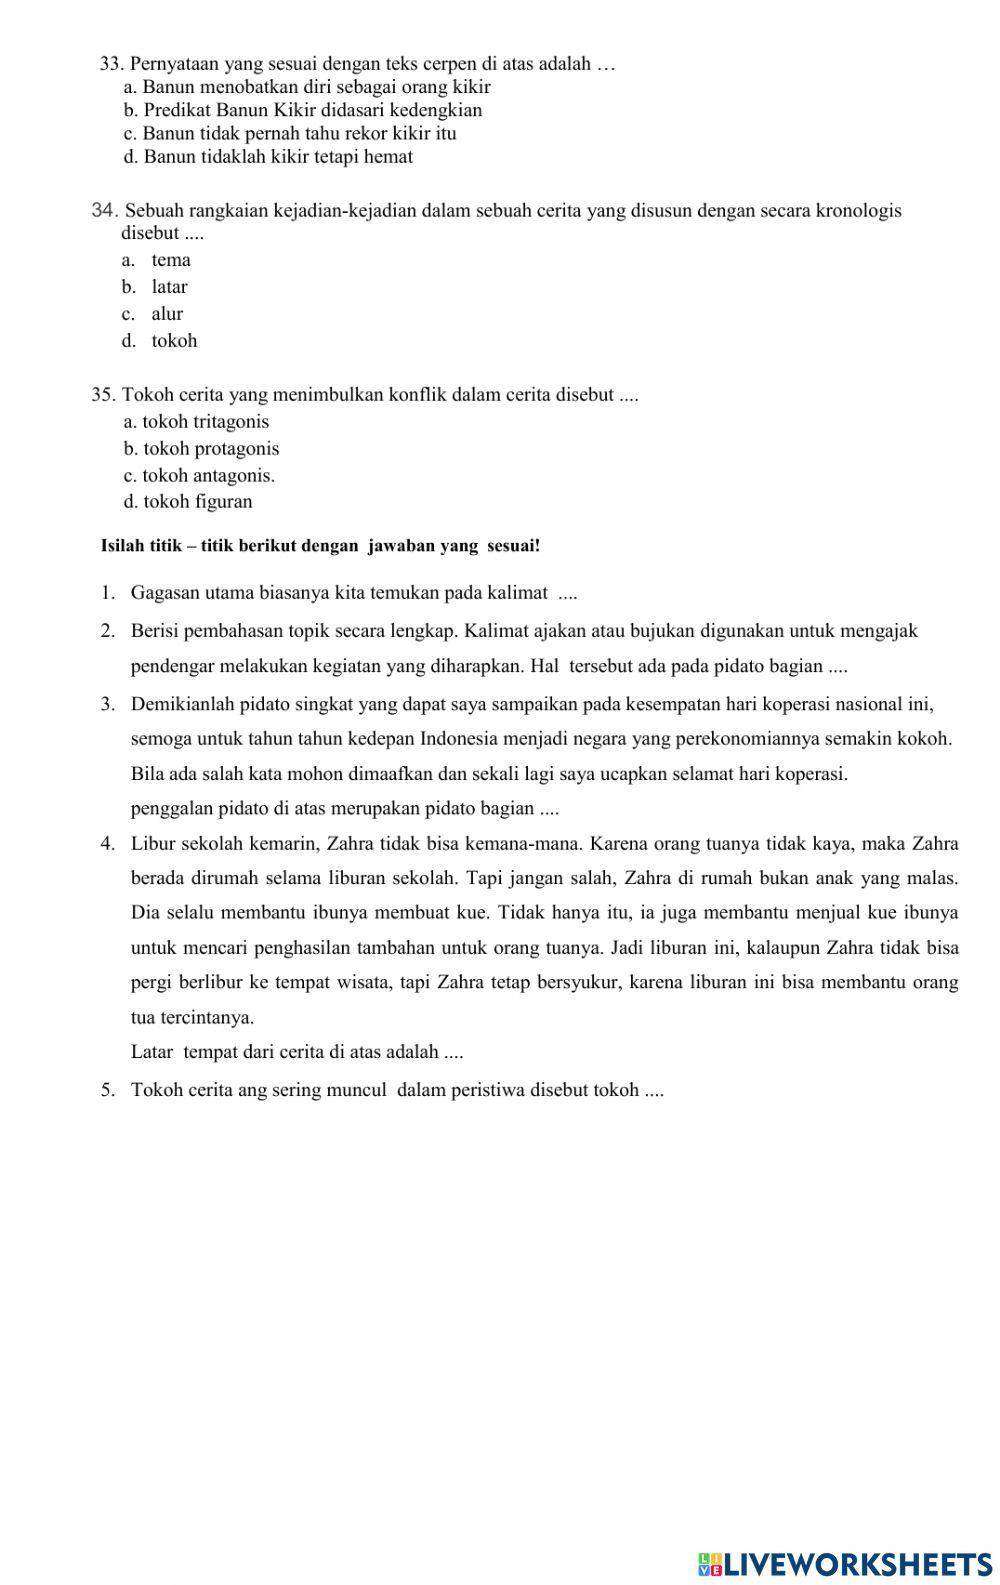 Soal bahasa Indonesia